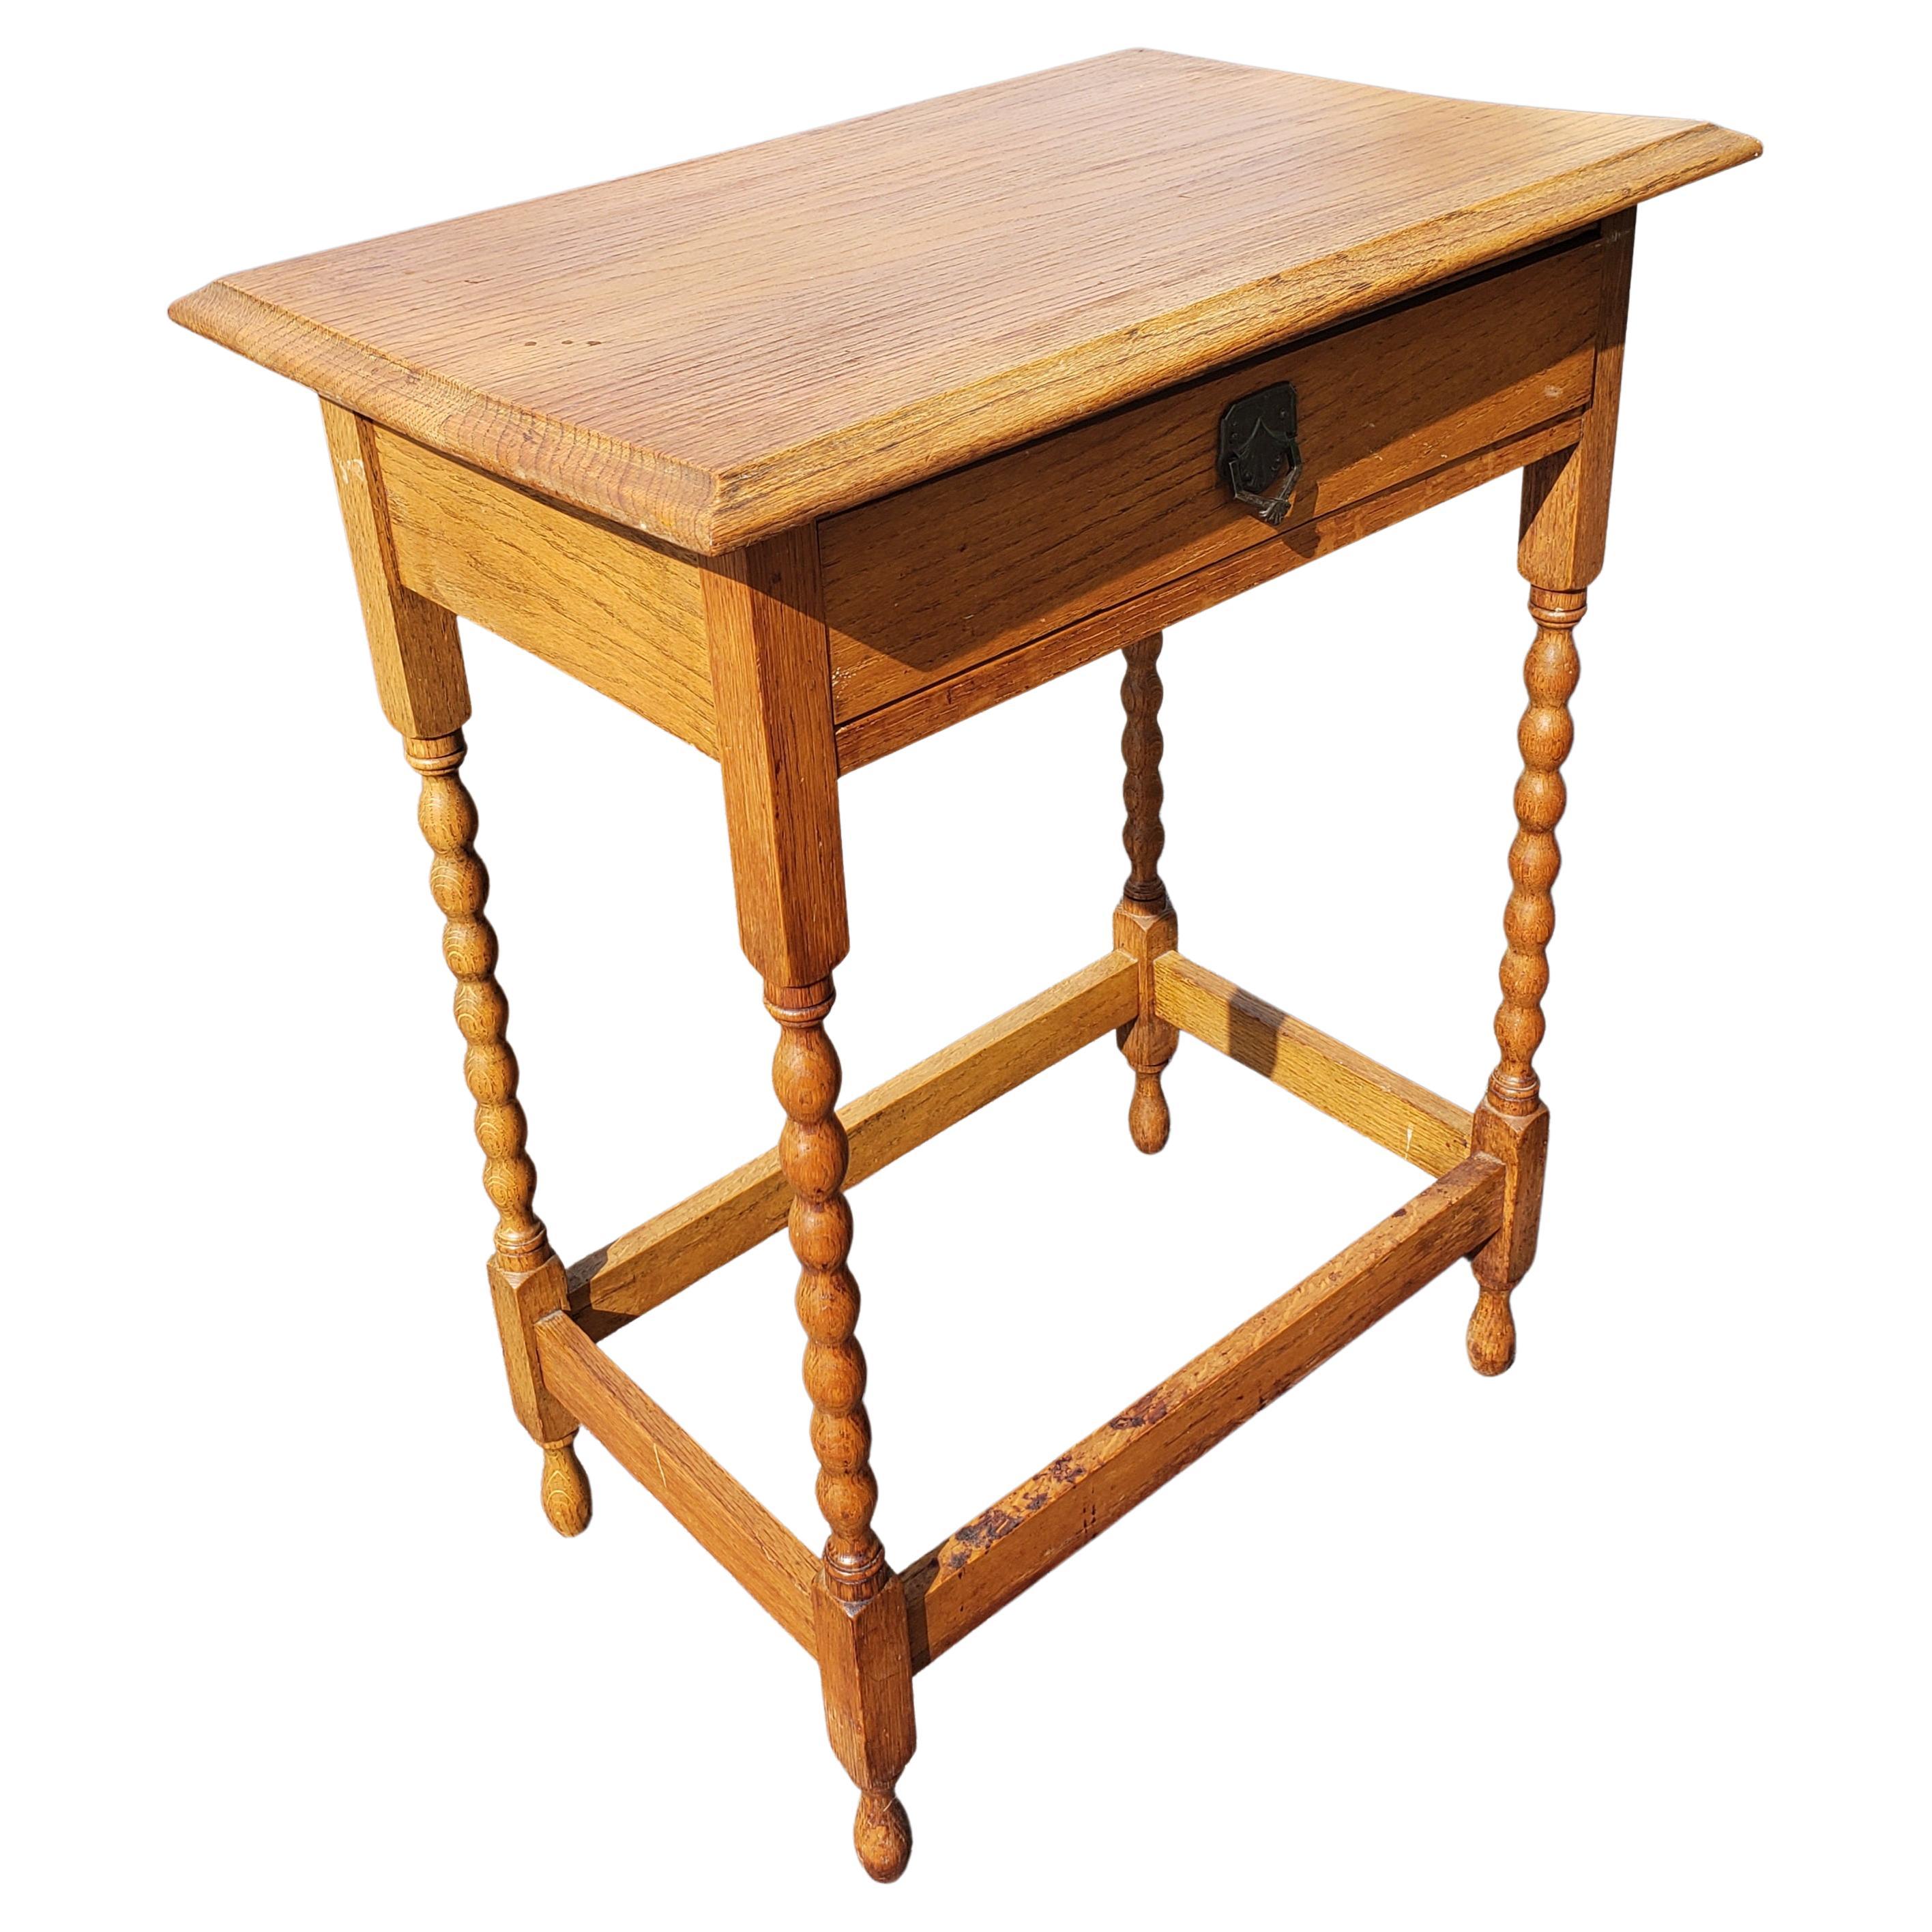 Englischer Industrietisch aus Eichenholz mit einer Schublade, Beistelltisch